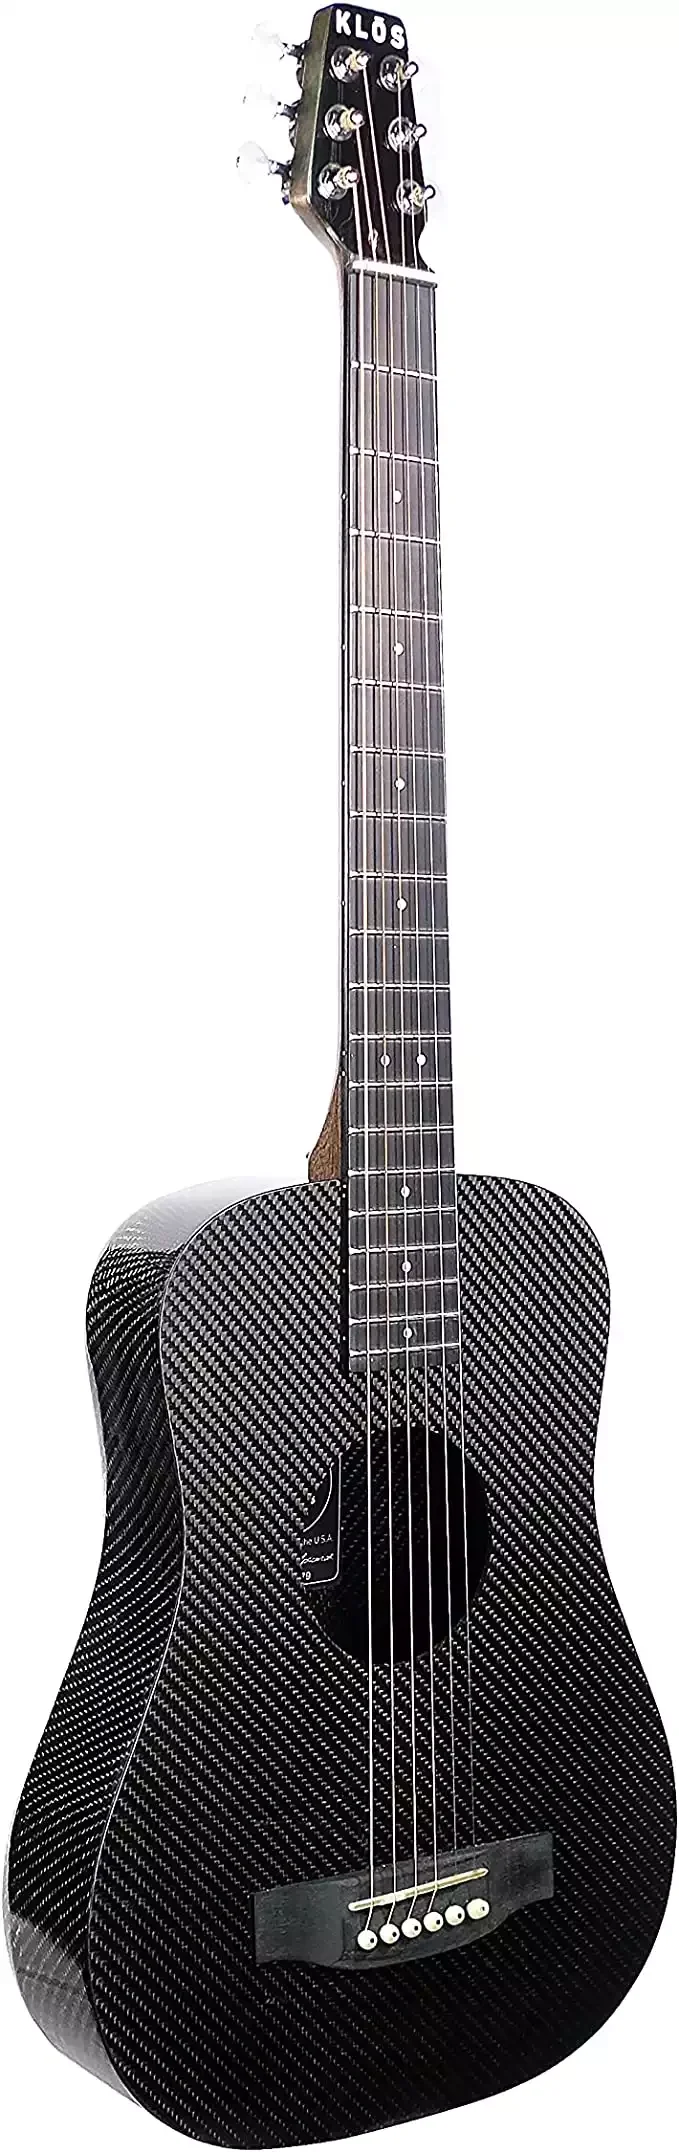 KLOS Black Carbon Fiber Guitar